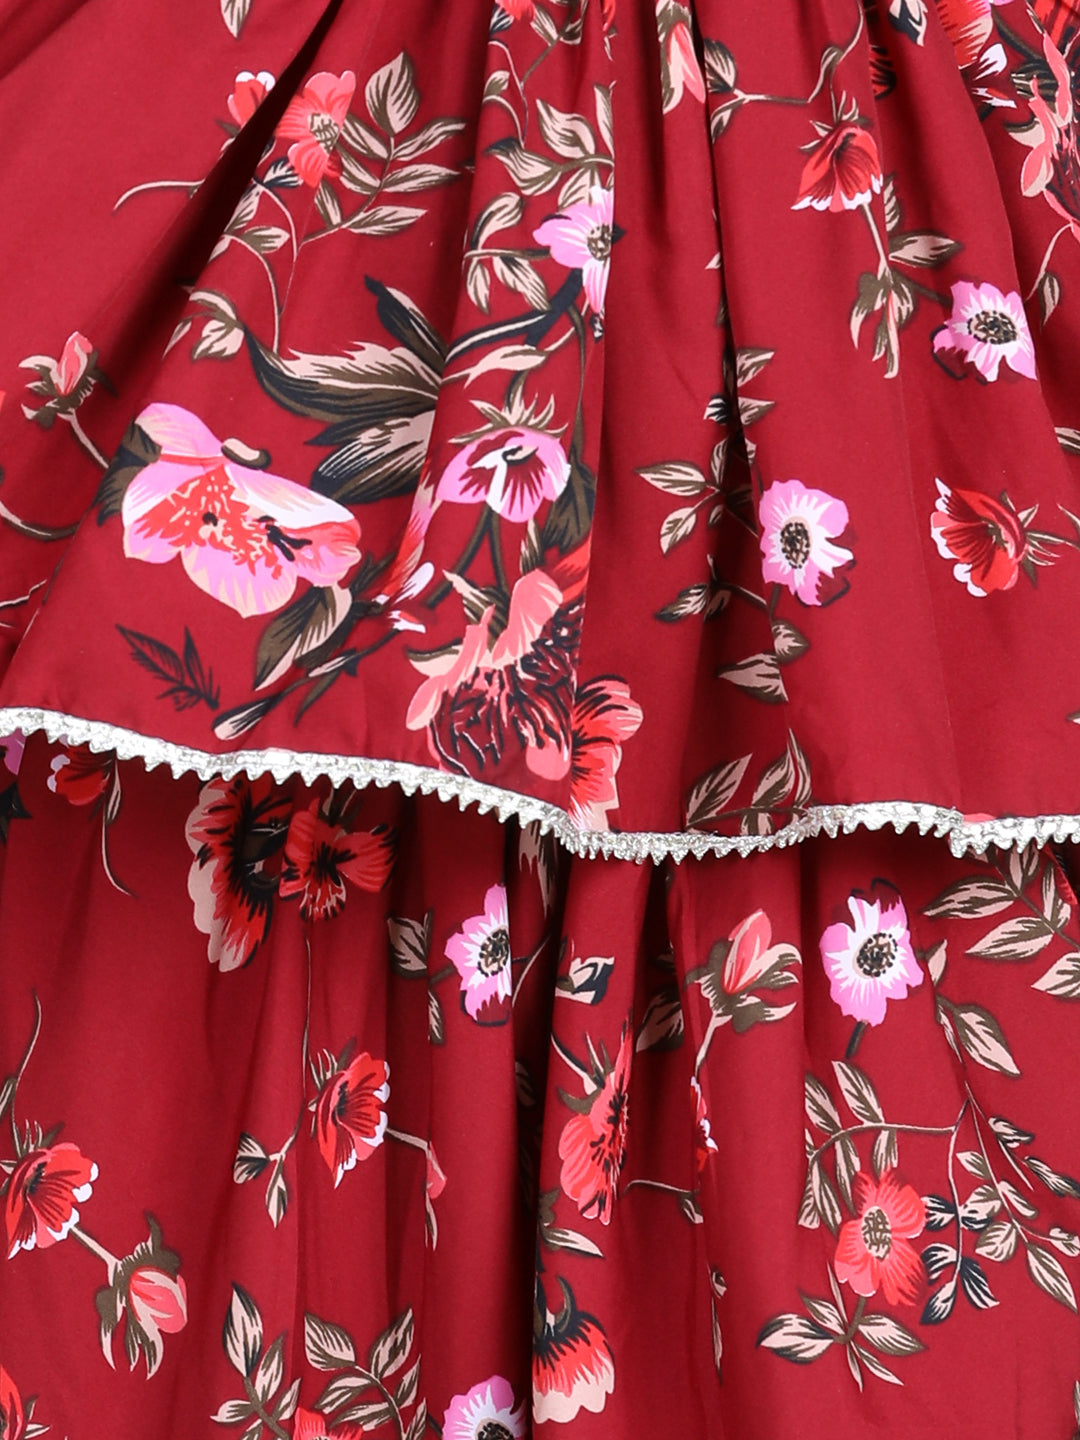 Cutiekins Floral Printed Peplum Top & Dhoti Set- Maroon & Brown